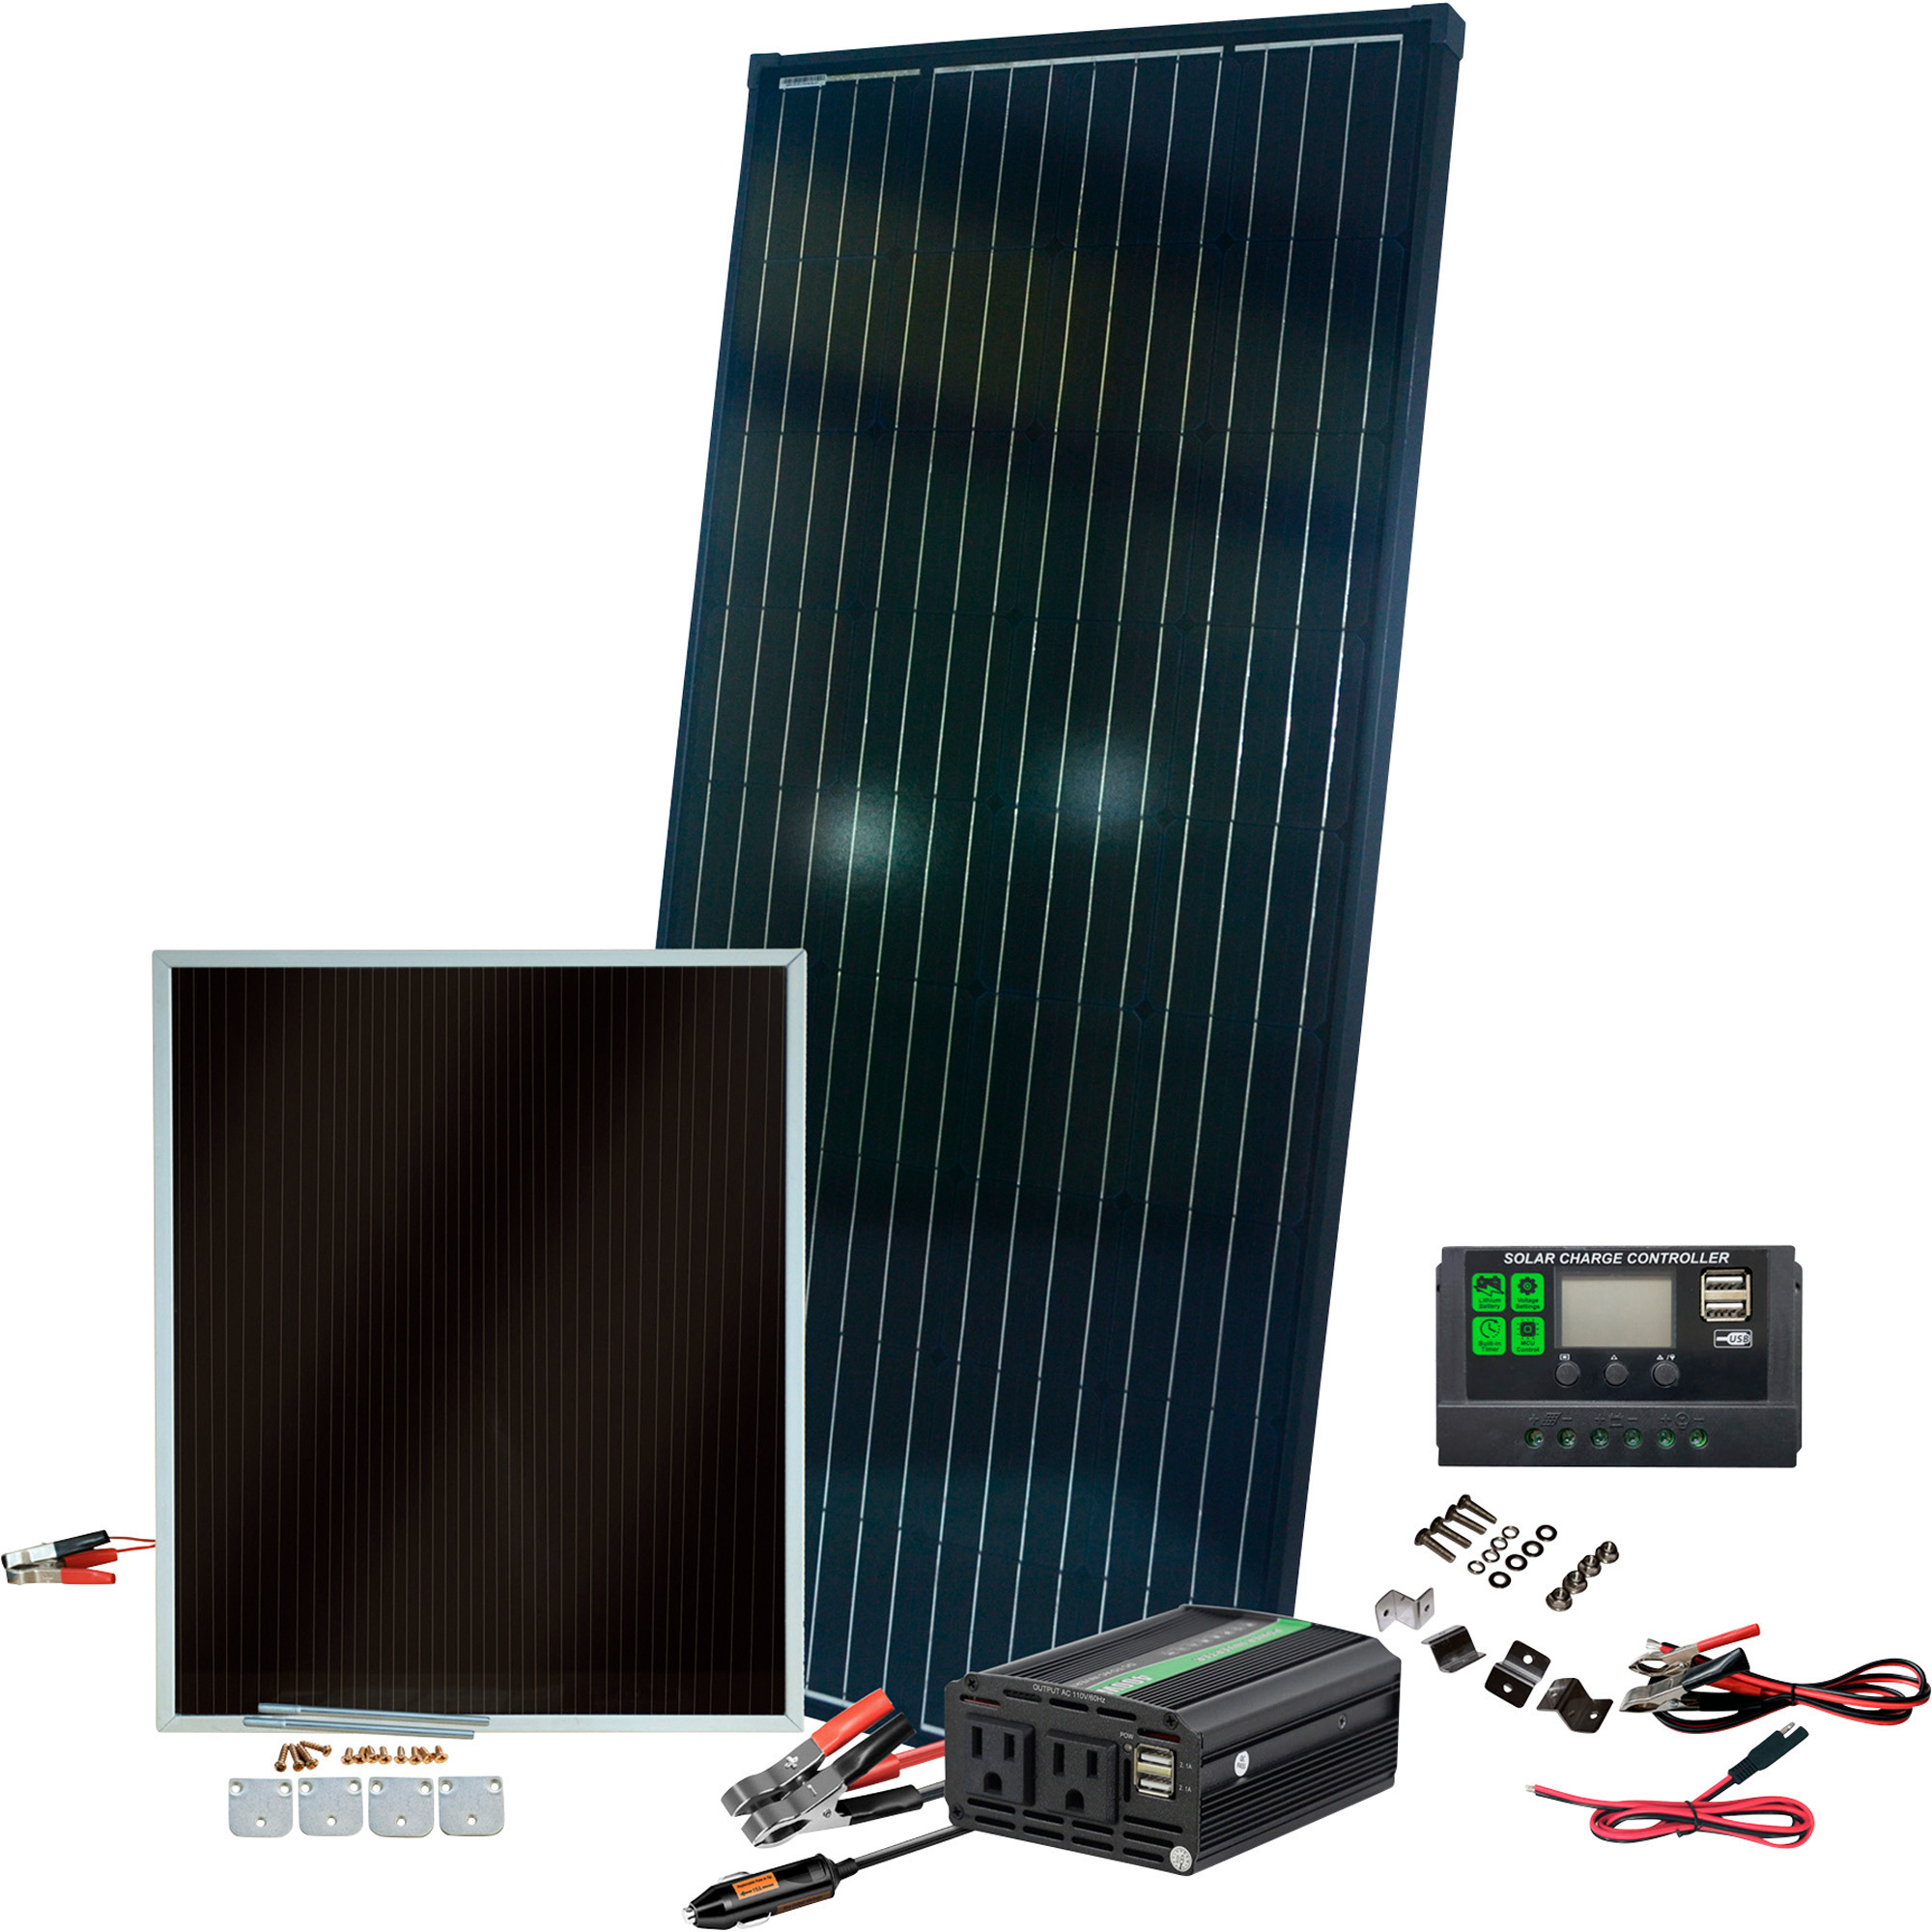 Nature Power 215 Watt Solar Panel Kit, Model 50217